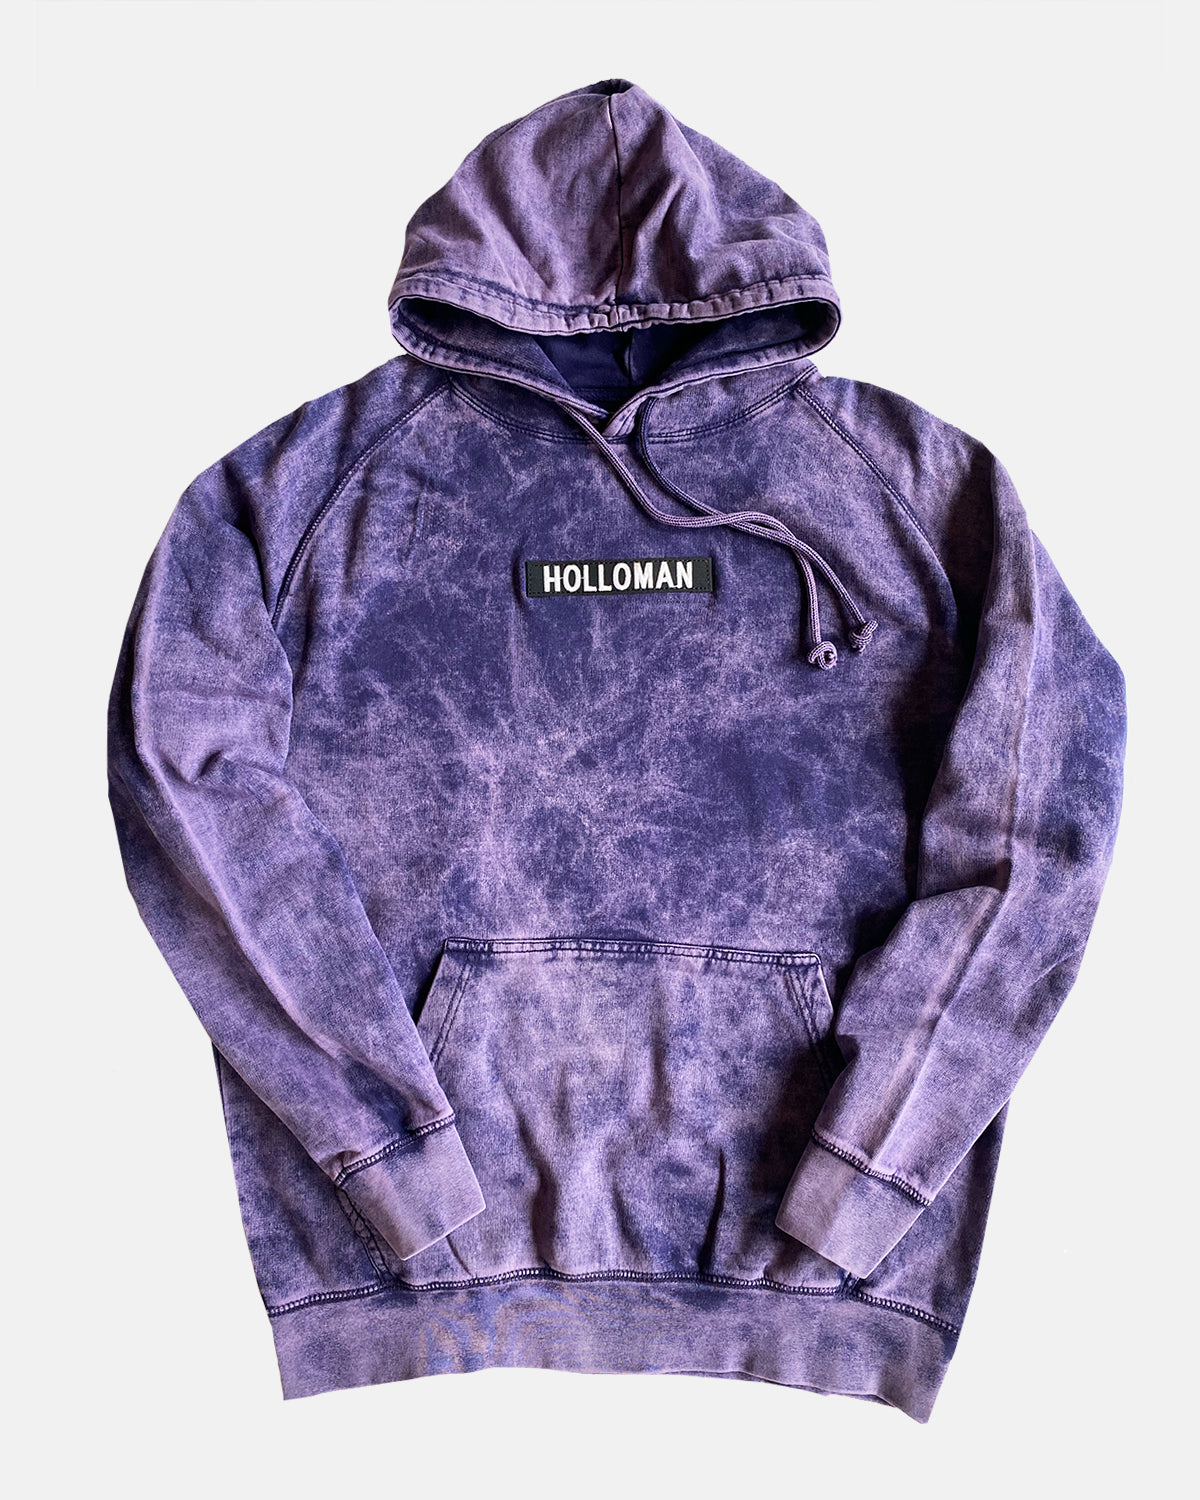 Extra ashy holloman hoody / purple